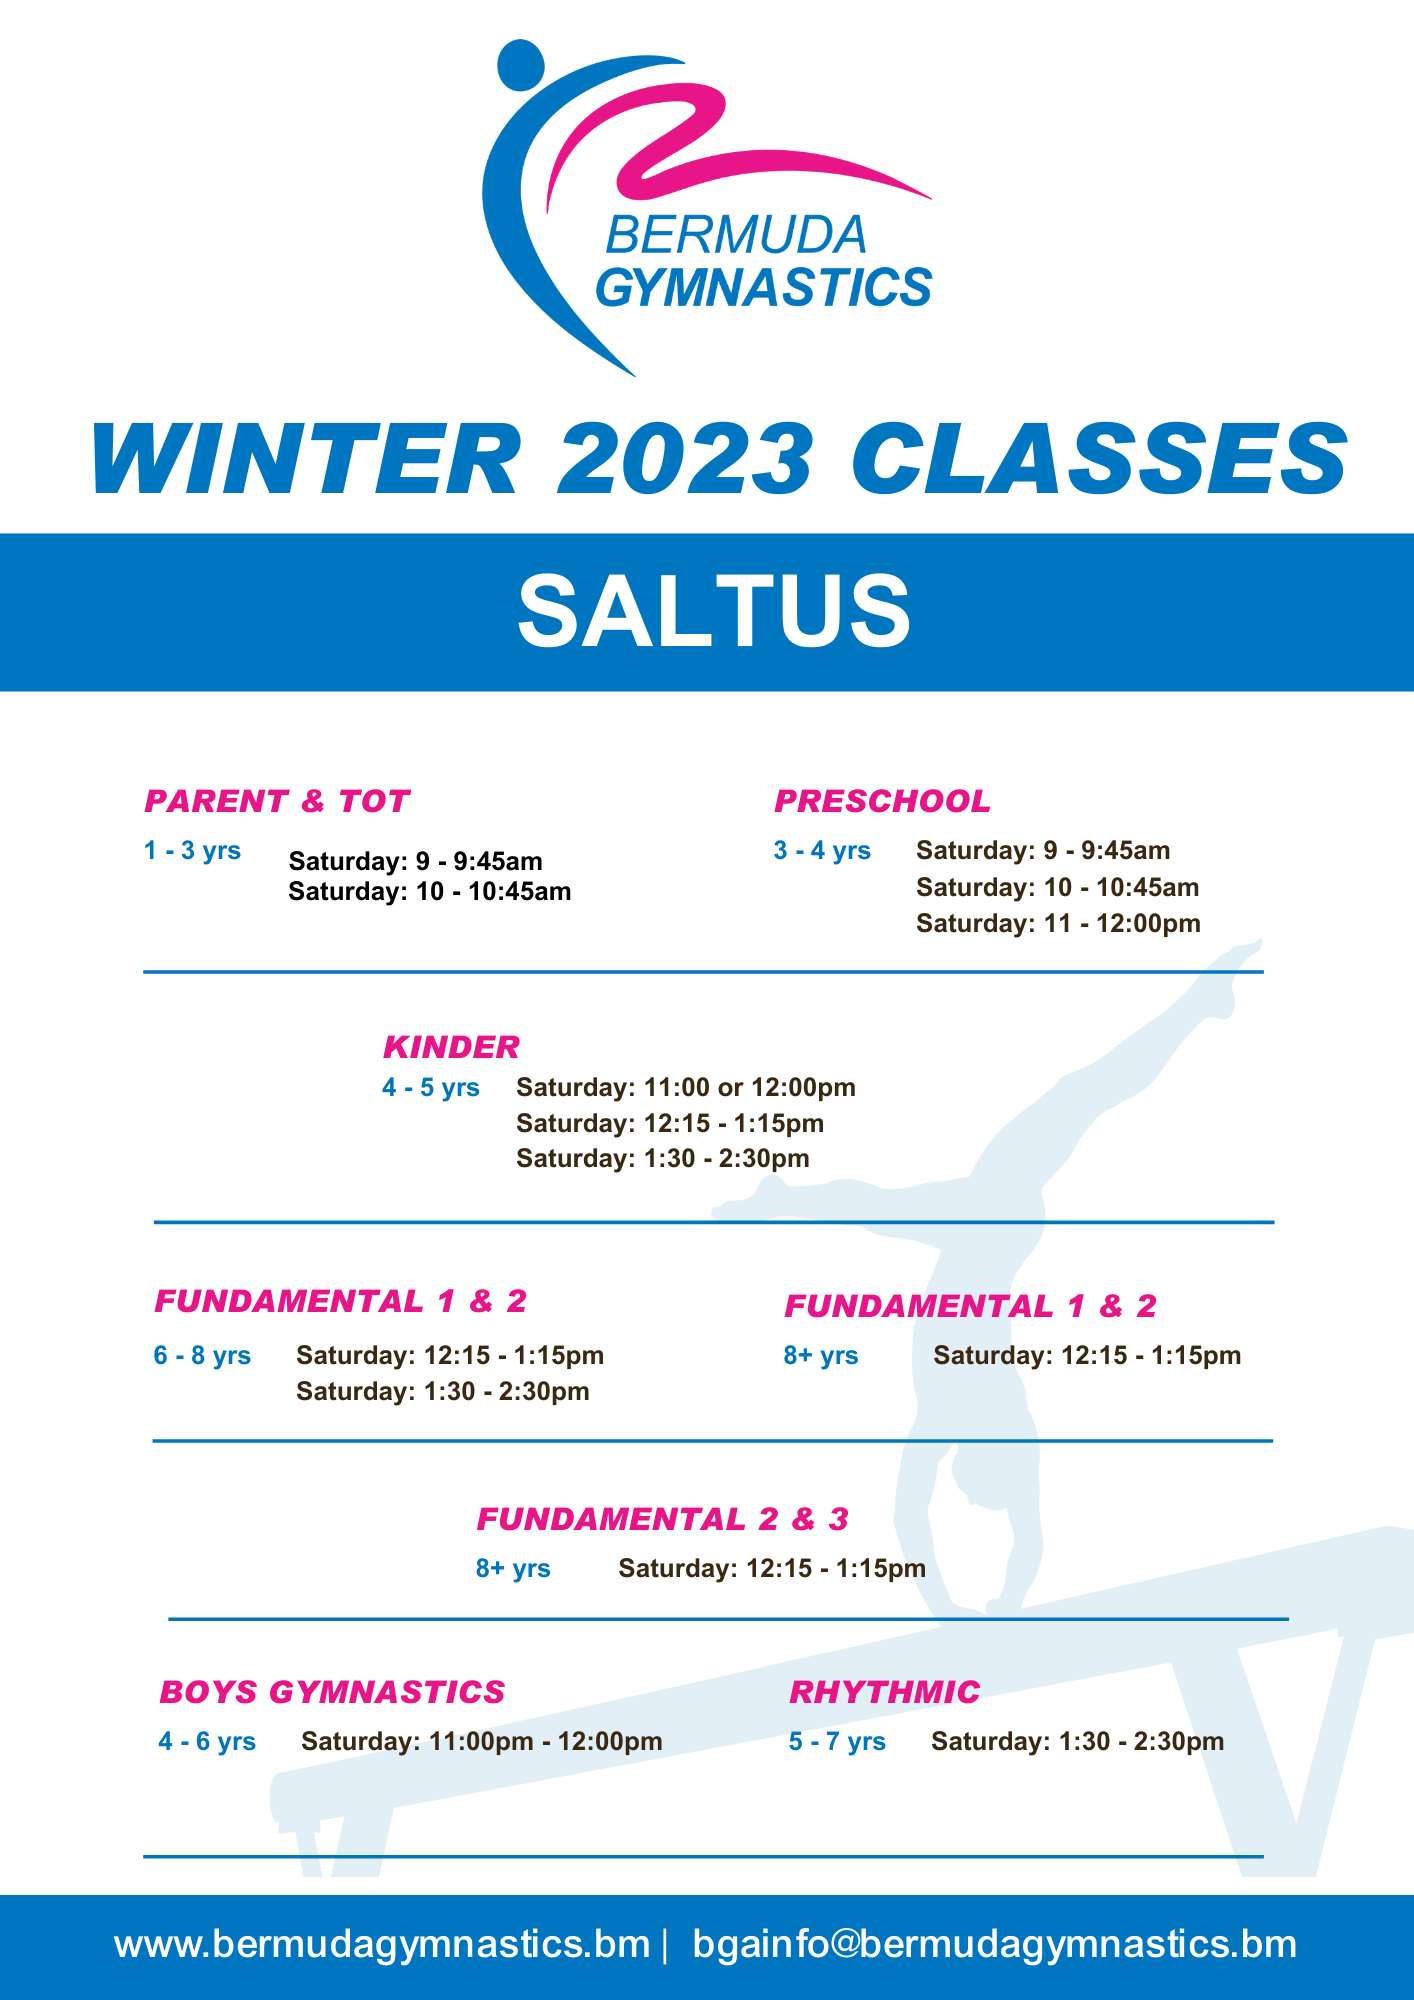 WINTER 2023 Class Schedule SALTUS